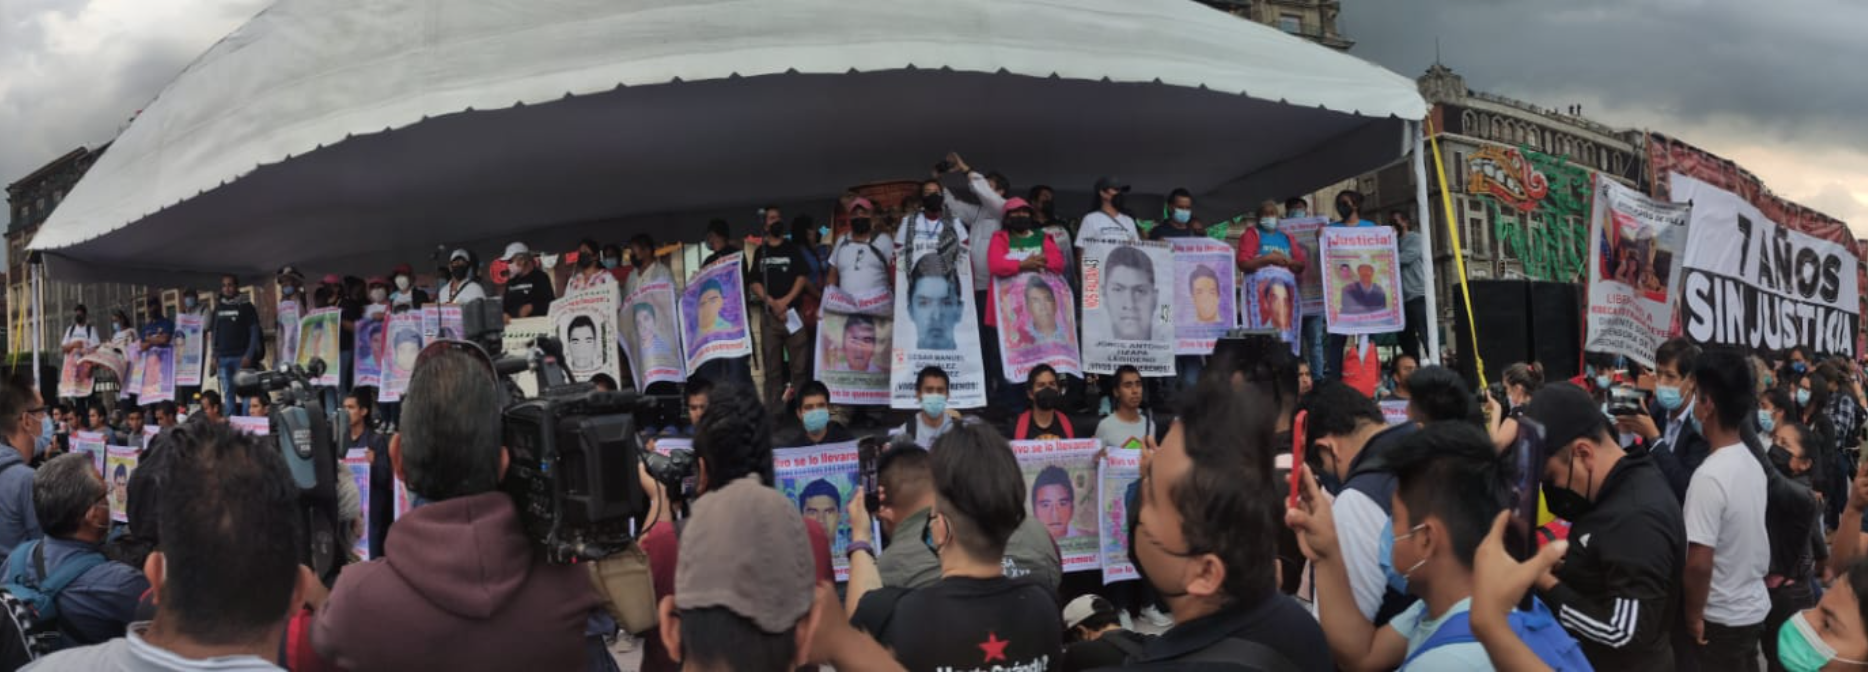 A 7 años de Ayotzinapa, el clamor de verdad y justicia crece